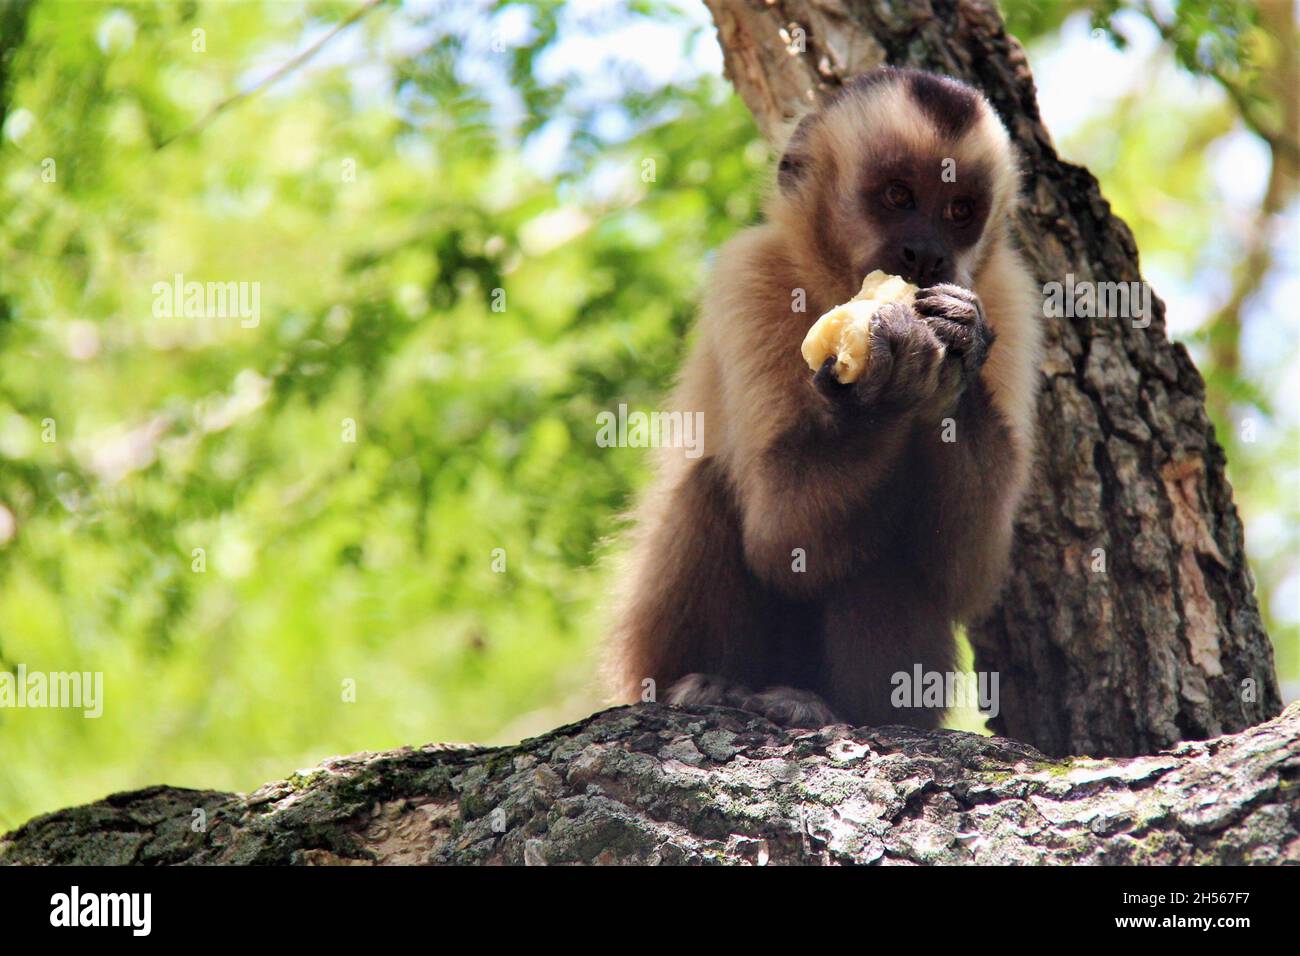 Affe, auf einem Baumstamm, eine Banane mit beiden Händen essen. Bonito - Mato Grosso do Sul - Brasilien. Stockfoto